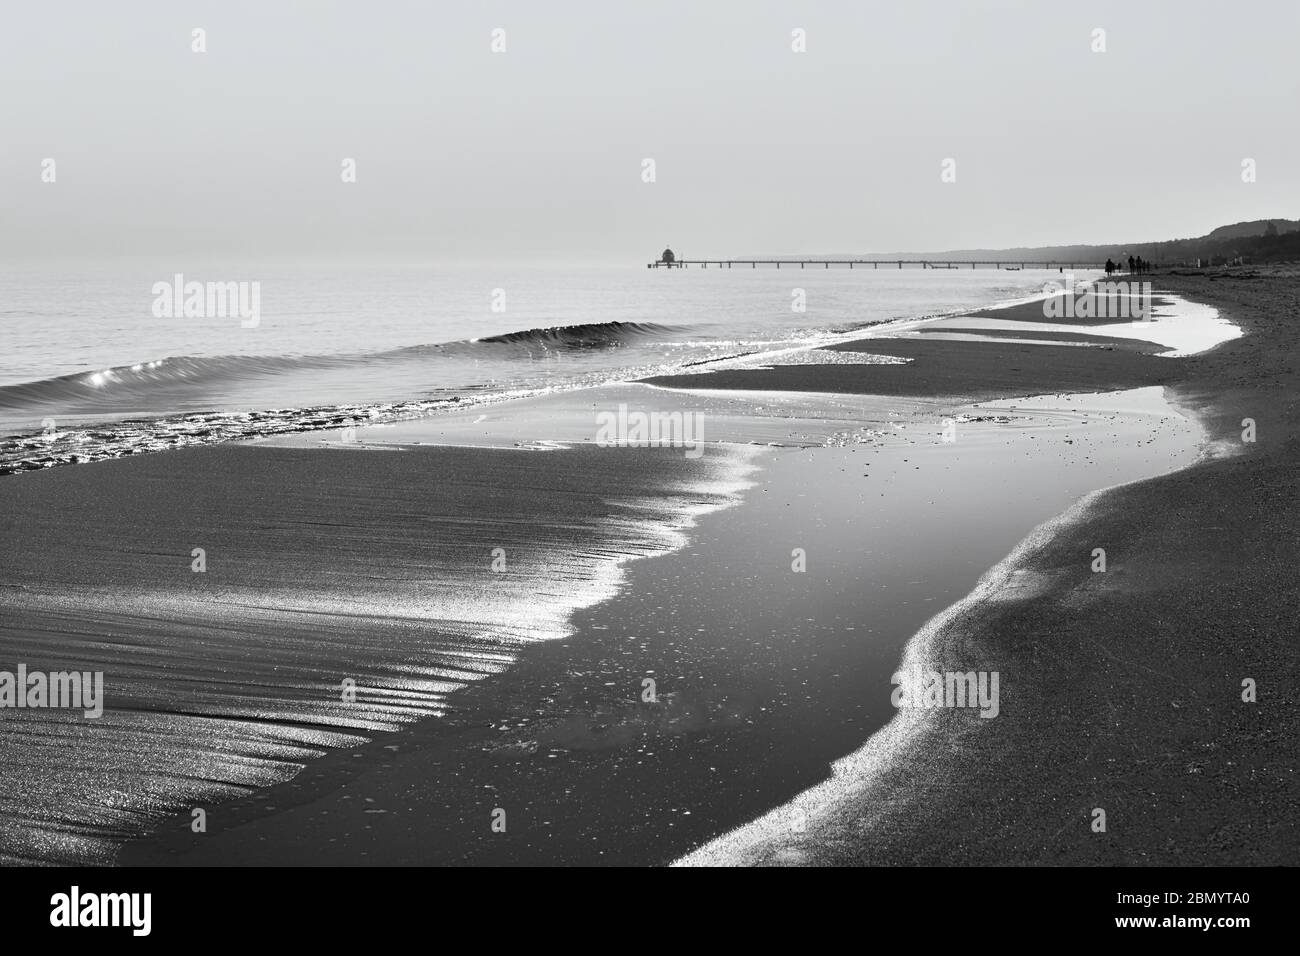 Vue le long de la ligne de flottaison avec vagues, surfaces d'eau et randonneurs ainsi qu'un quai en arrière-plan - image en noir et blanc - emplacement: Mer Baltique Banque D'Images